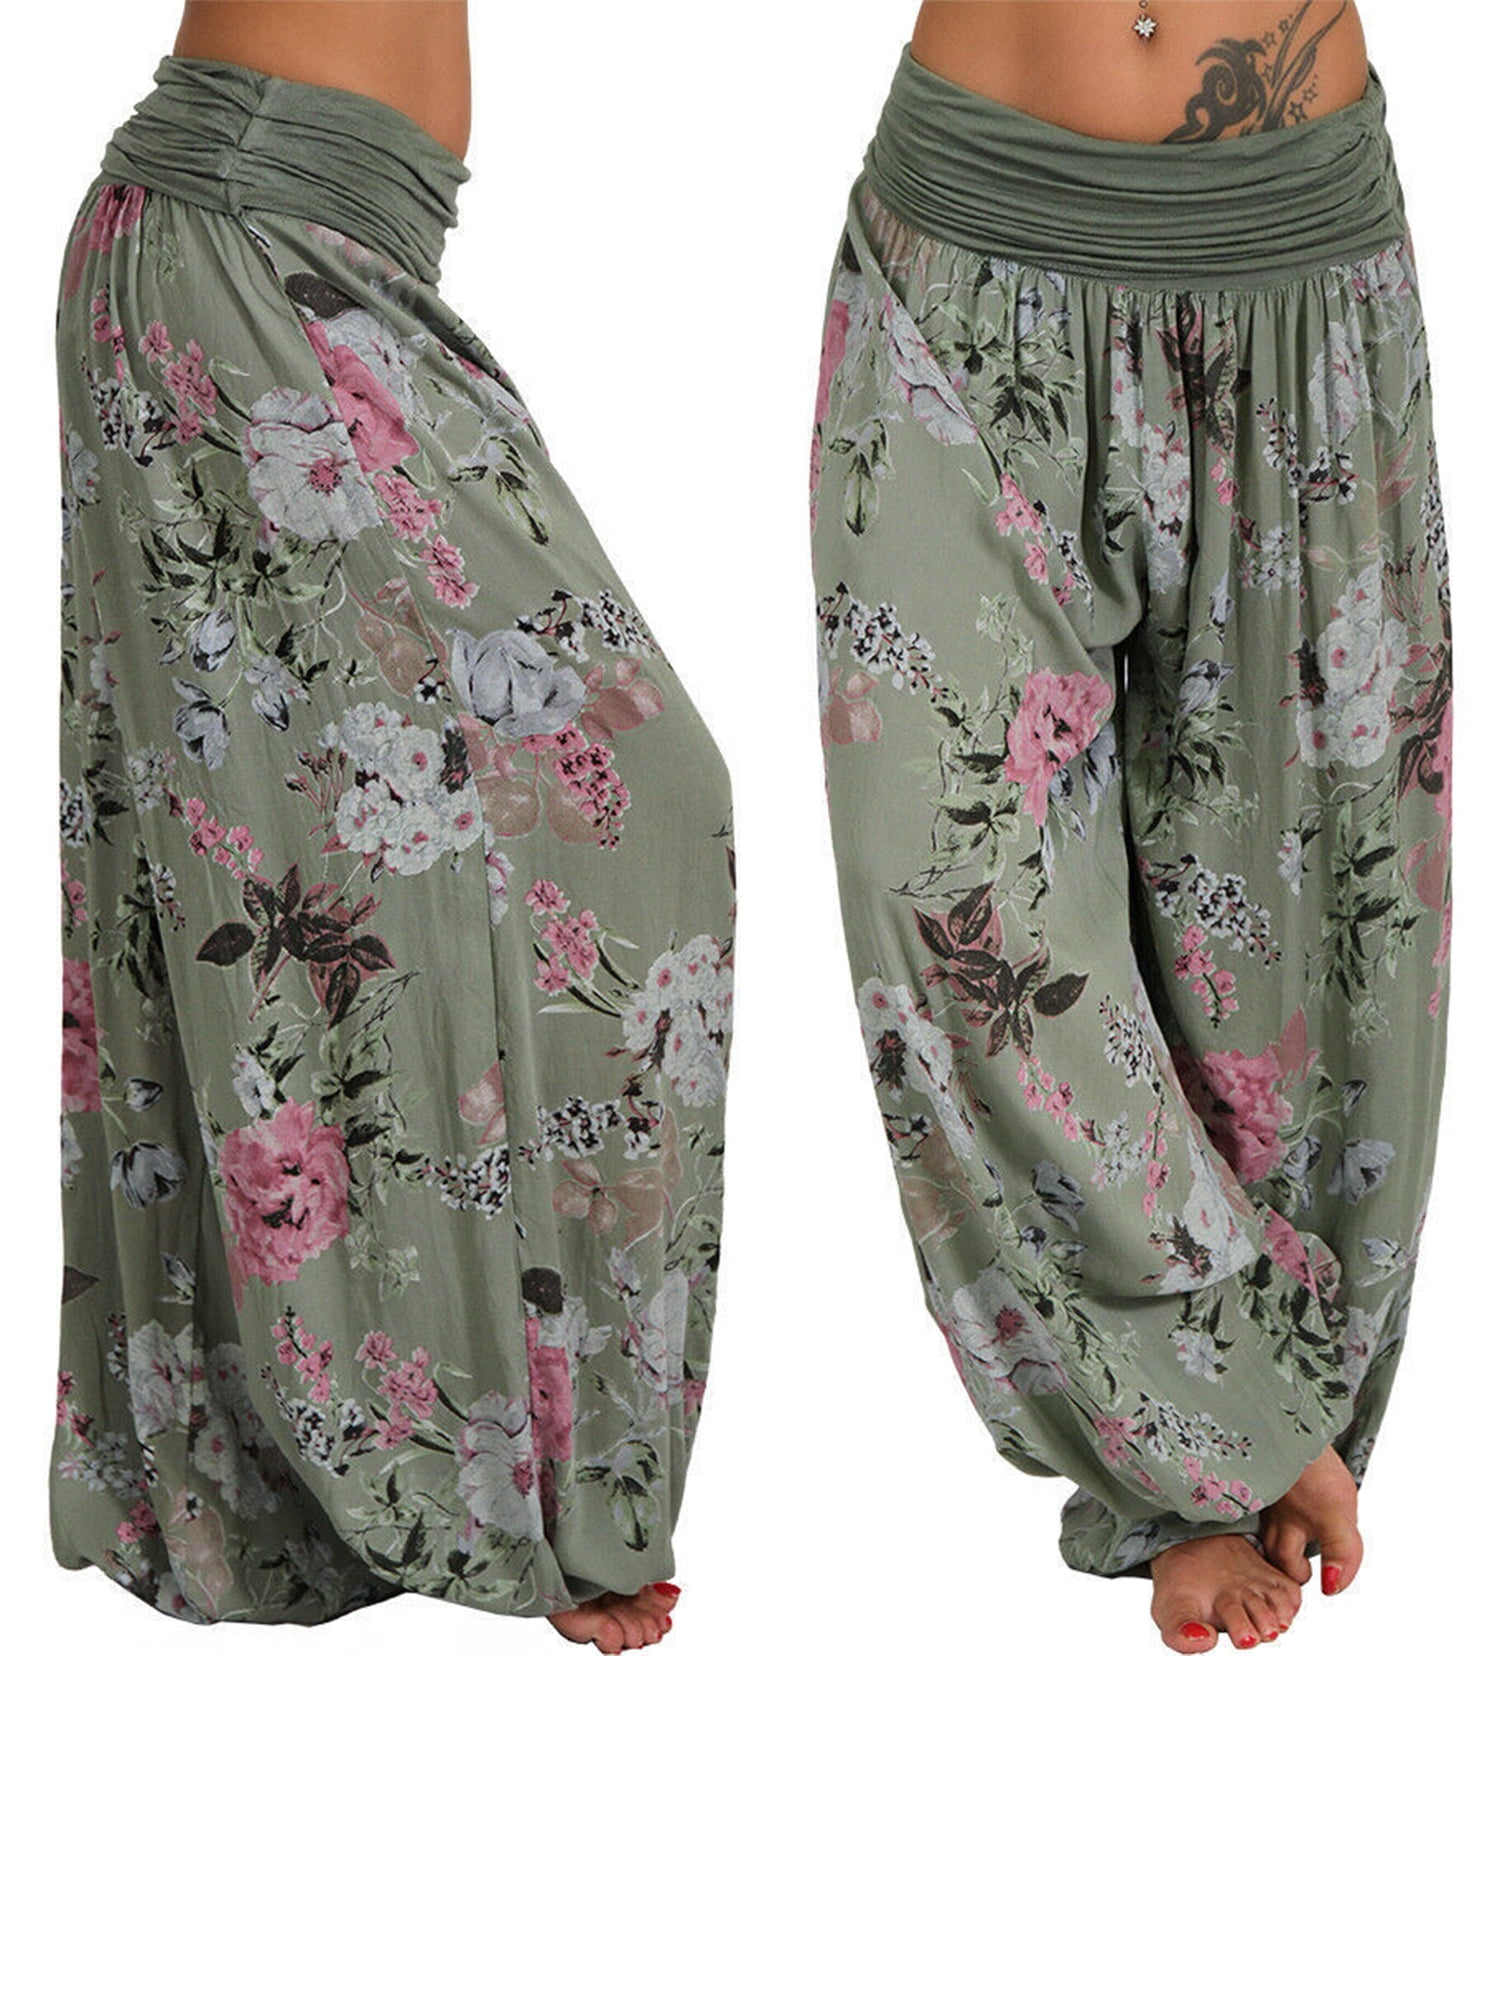 Montecarduo Harem Pants Women - Summer Women Cotton Linen Large Plus Size  Loose Long Pants Casual Pant Print Harem Baggy Pants Thin Ankle Trousers,Floral,M  : Amazon.co.uk: Fashion